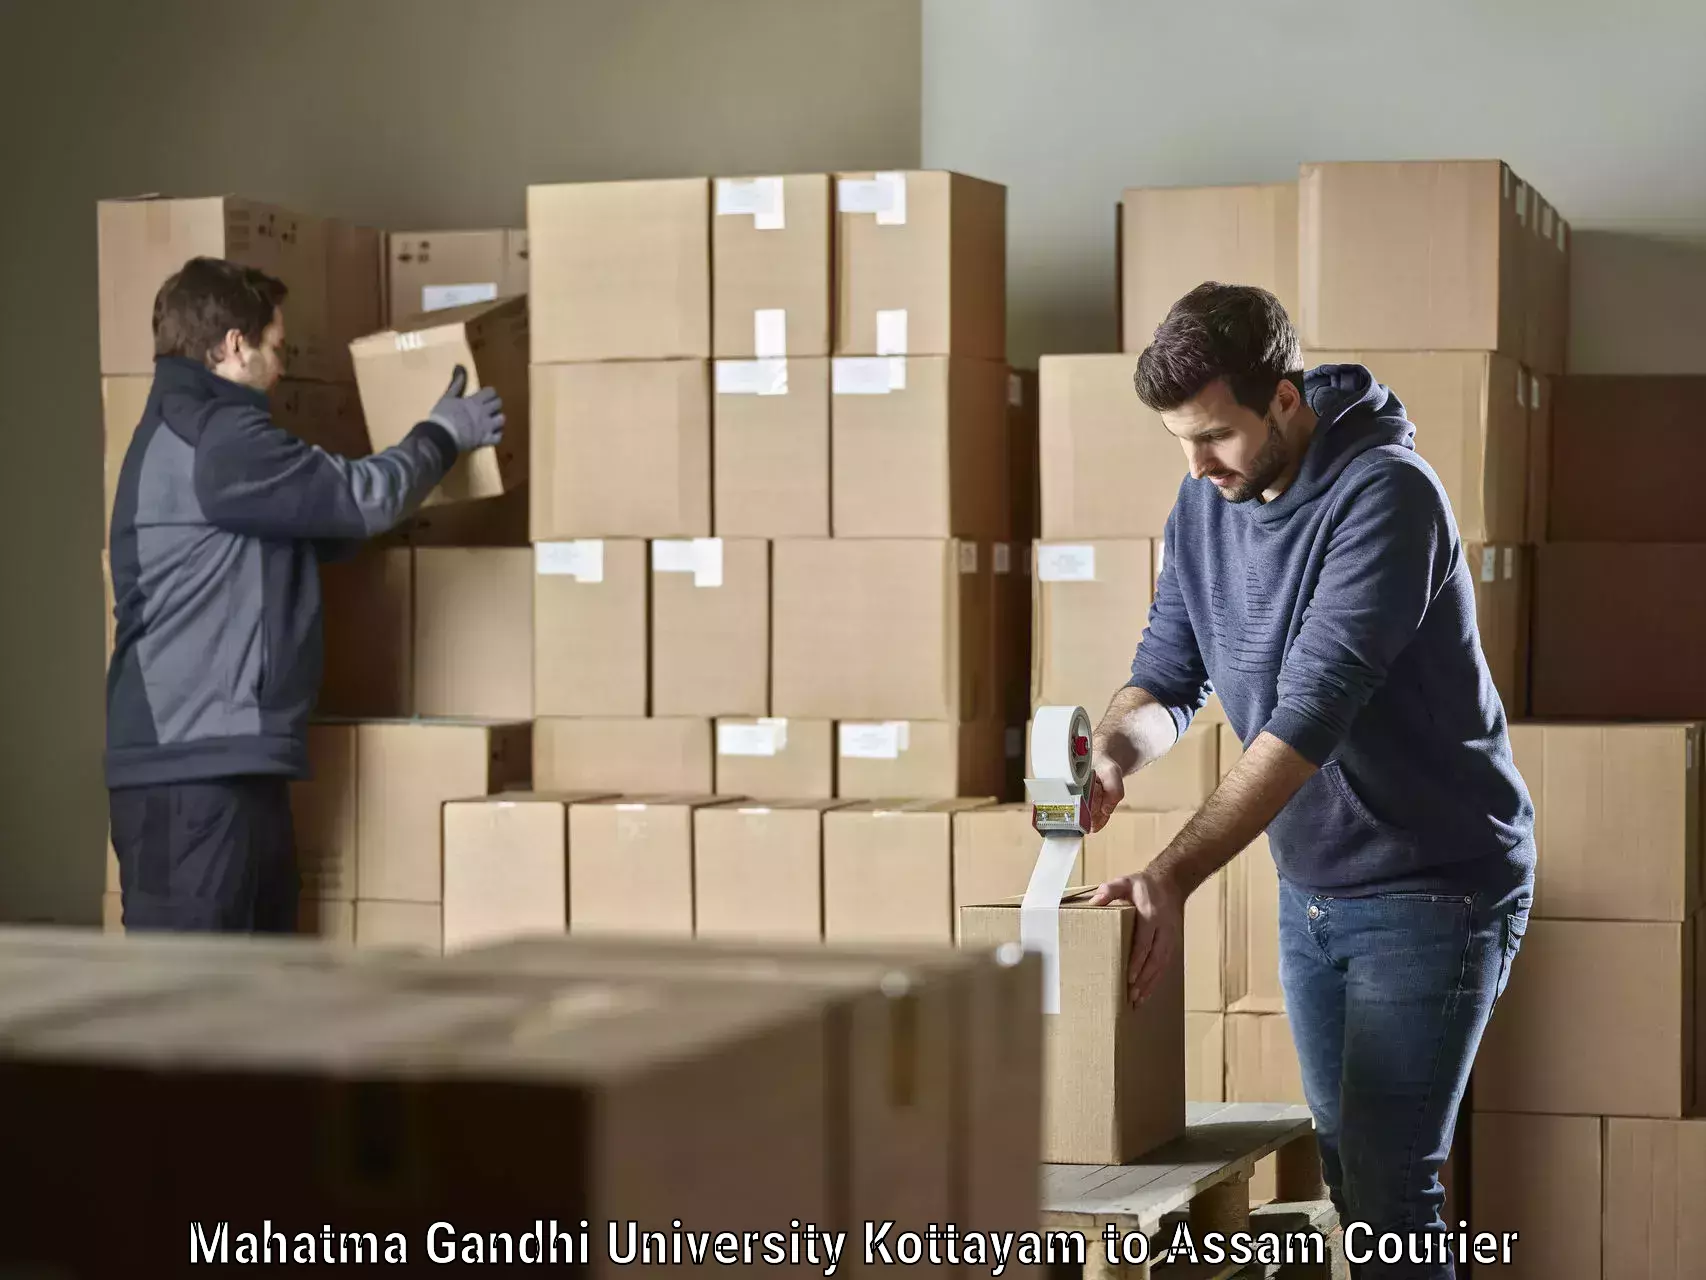 Efficient logistics management Mahatma Gandhi University Kottayam to Marigaon